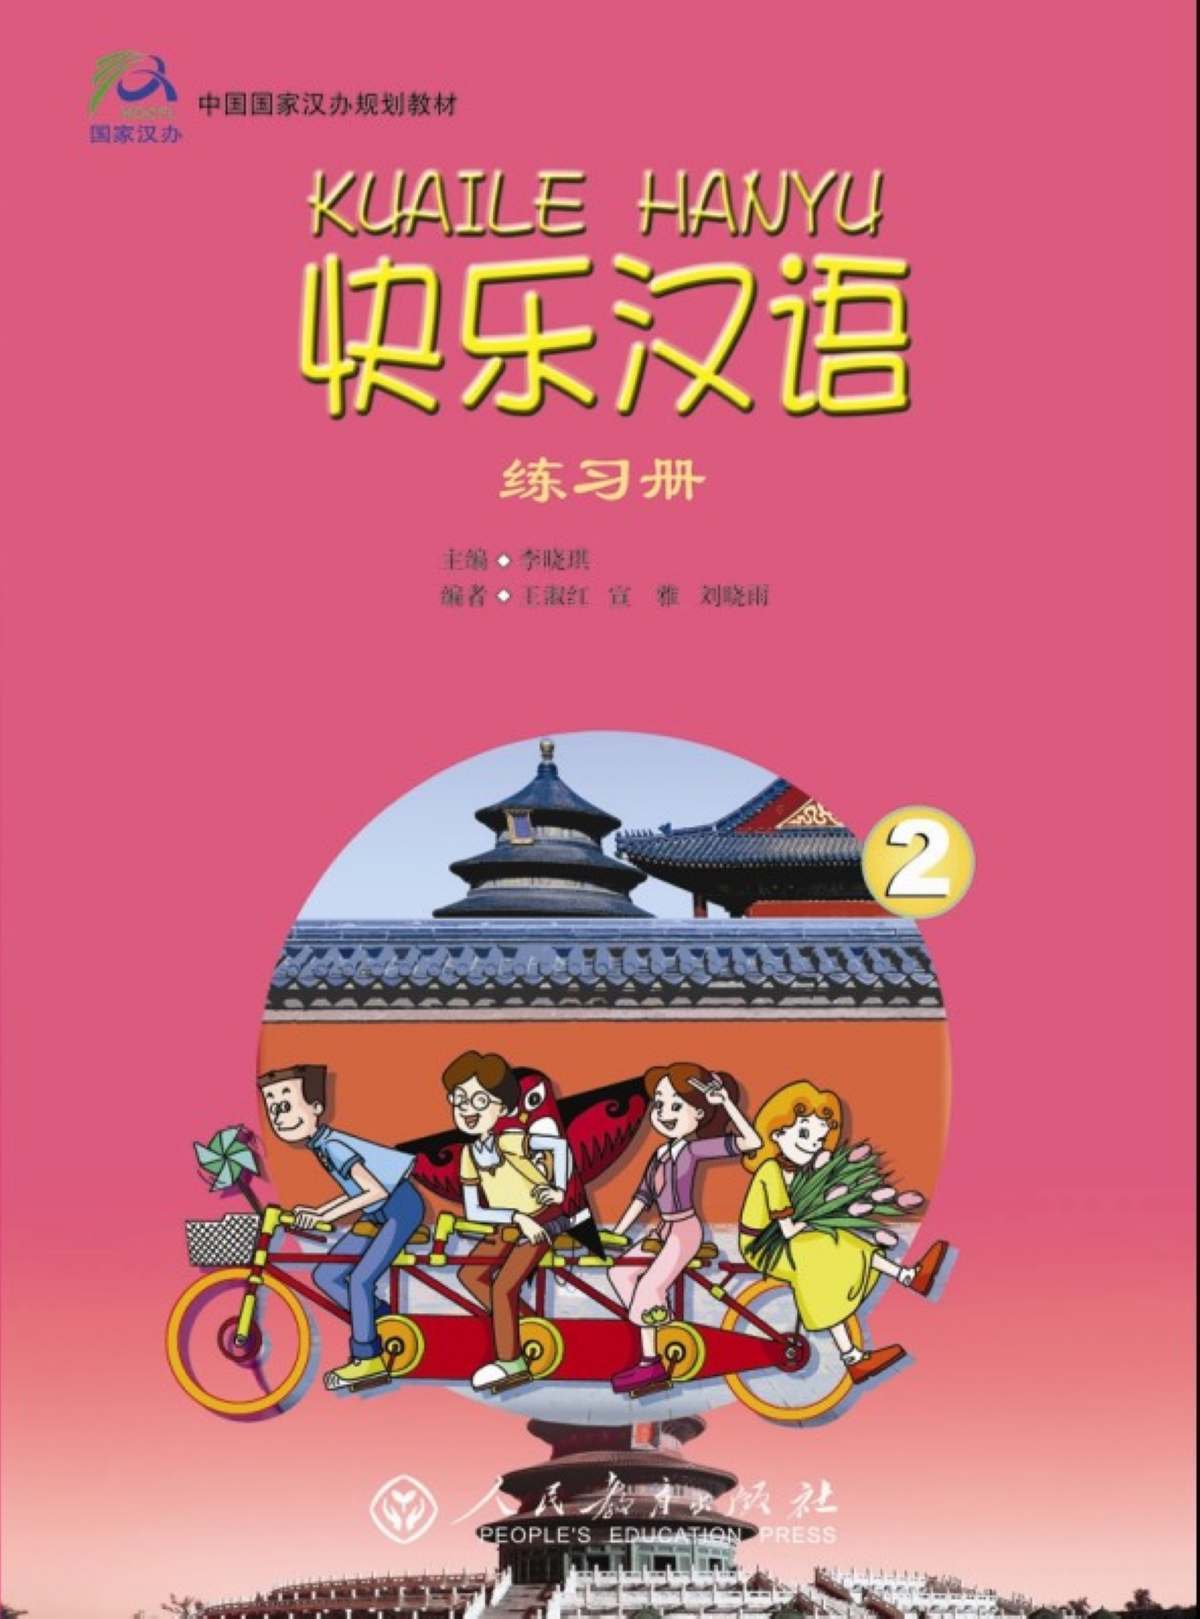 KUAILE HANYU ( Workbook 2) #快乐汉语第二册练习册 #happy chinese (Workbook Vol.2) #หนังสือเรียนภาษาจีน